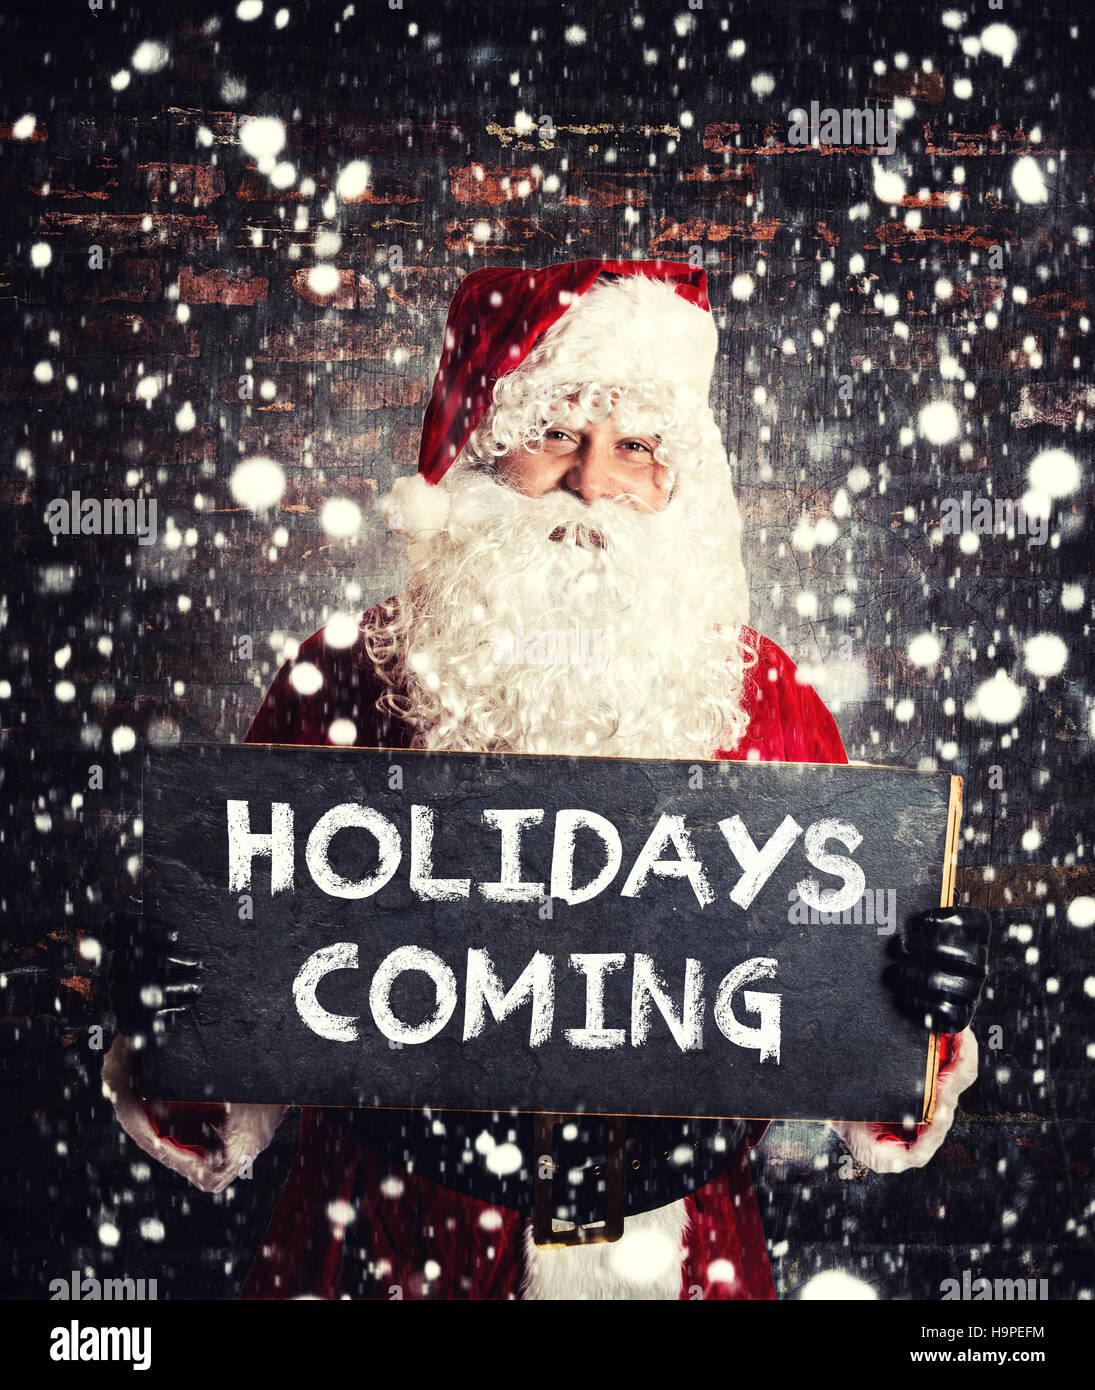 Le Père Noël avec les vacances prochaines sign on chalkboard Banque D'Images